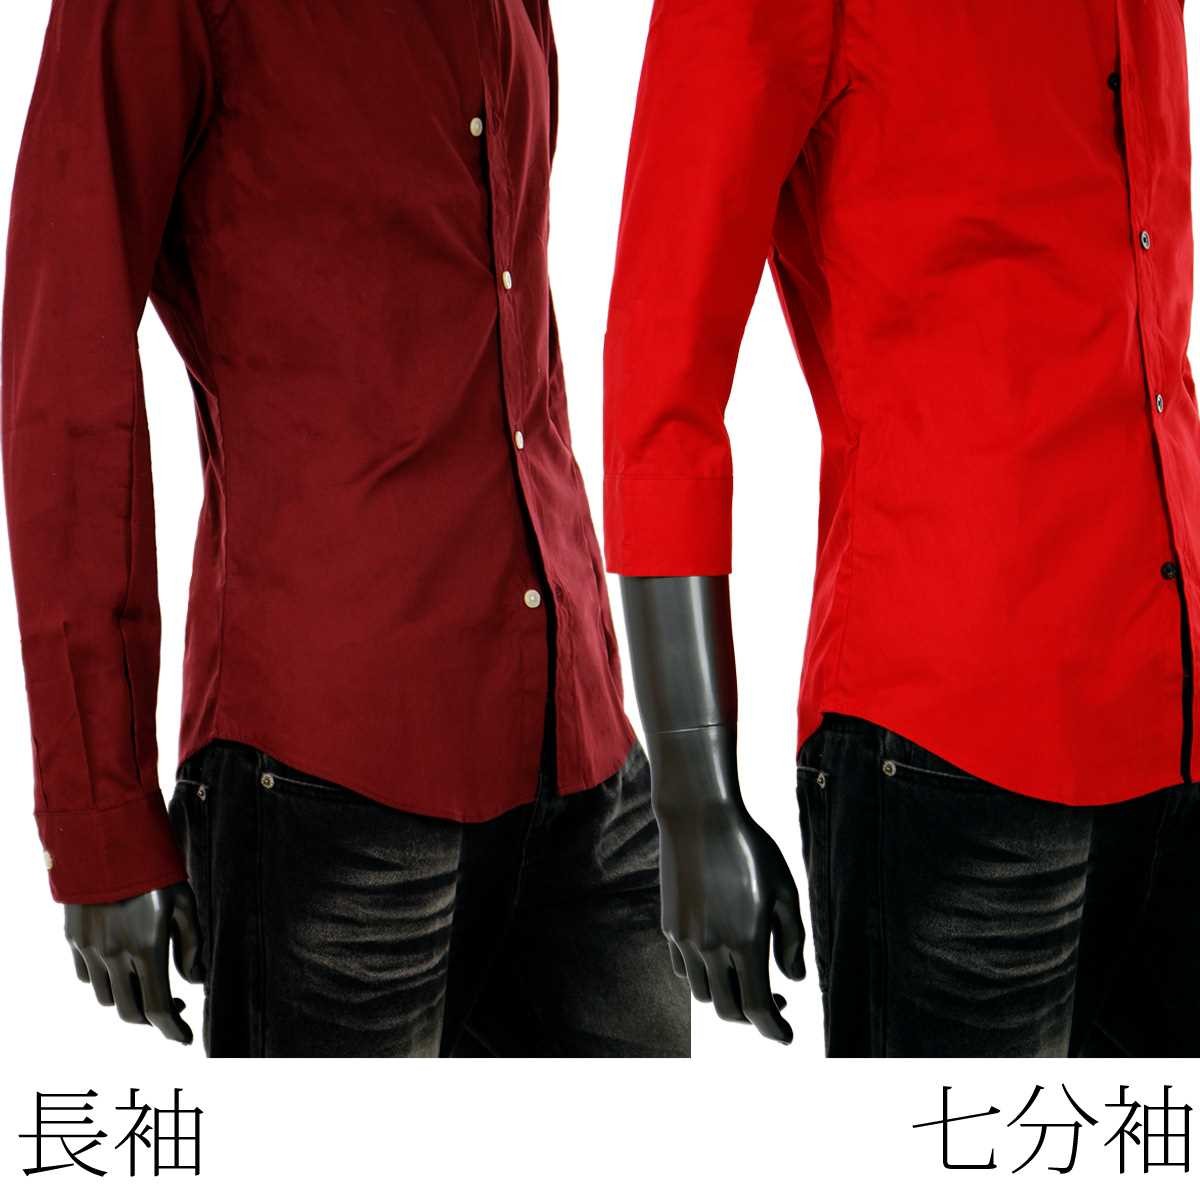 ドレスシャツ メンズ シャツ 赤 長袖 7分袖 カラーシャツ ブルー 黒 白 ワインレッド ピンク ウエストシェイプ ボタンダウンシャツ